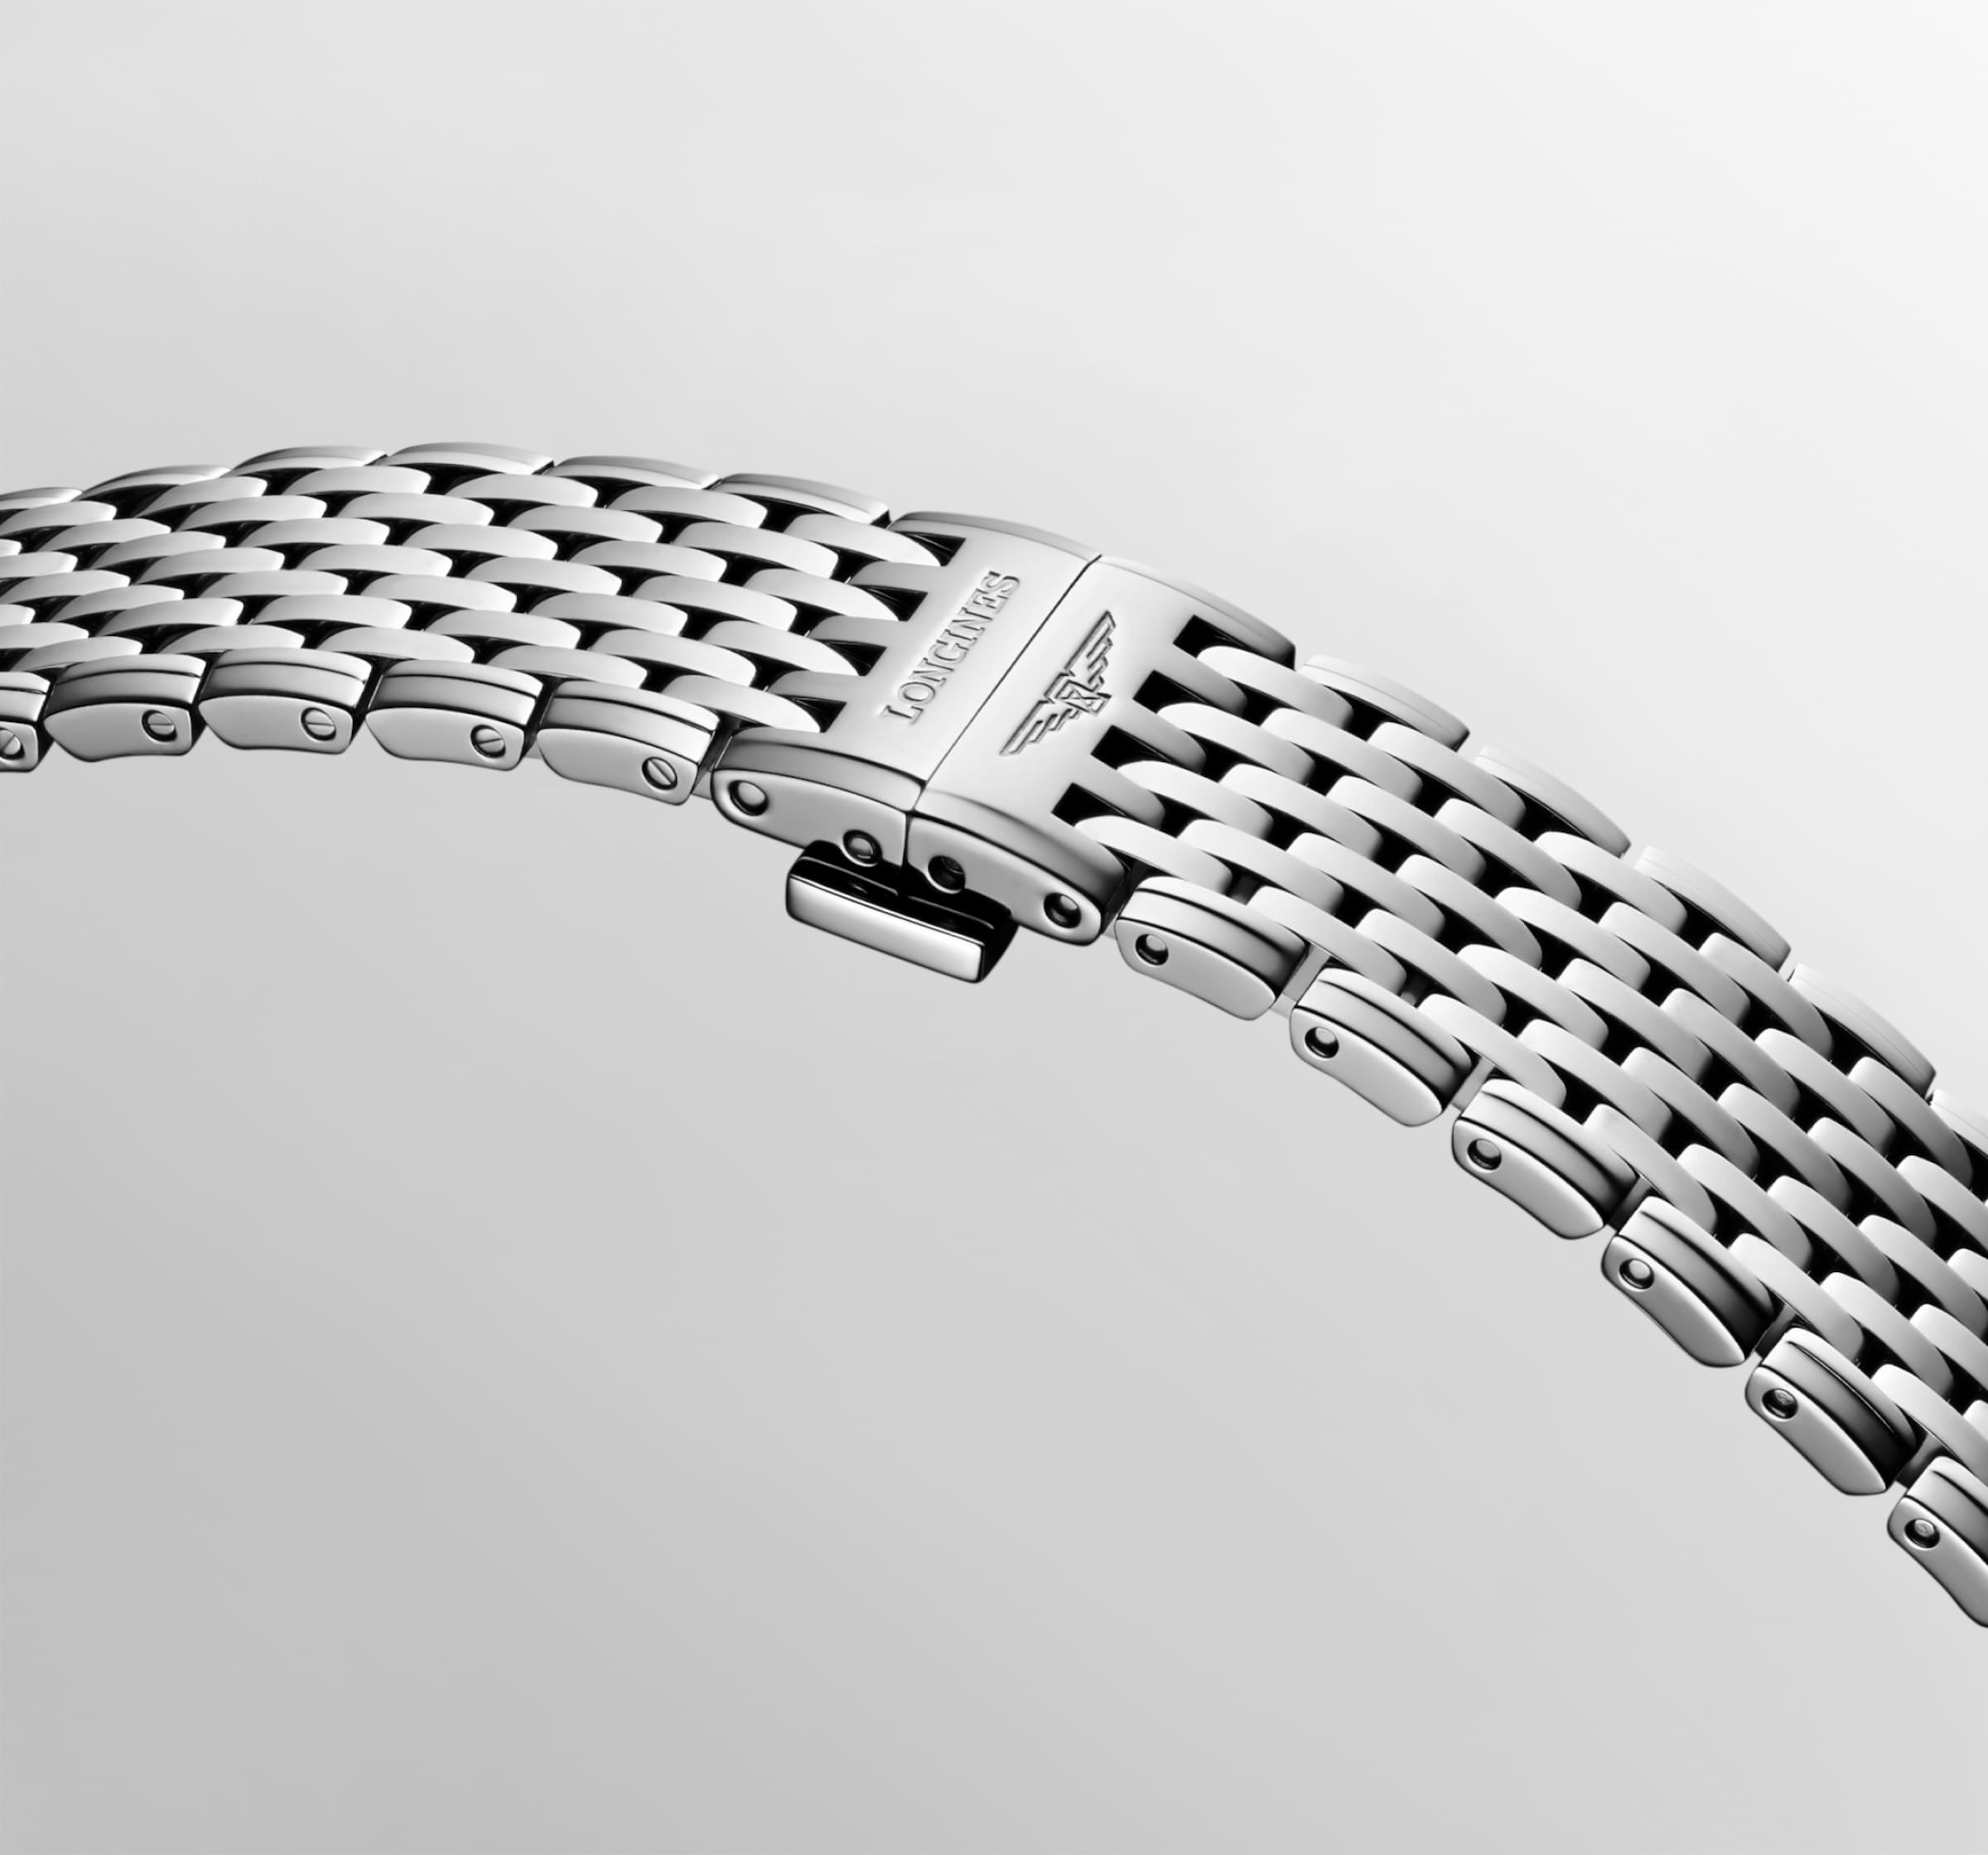 Longines LA GRANDE CLASSIQUE DE LONGINES Quartz Stainless steel Watch - L4.512.4.70.6